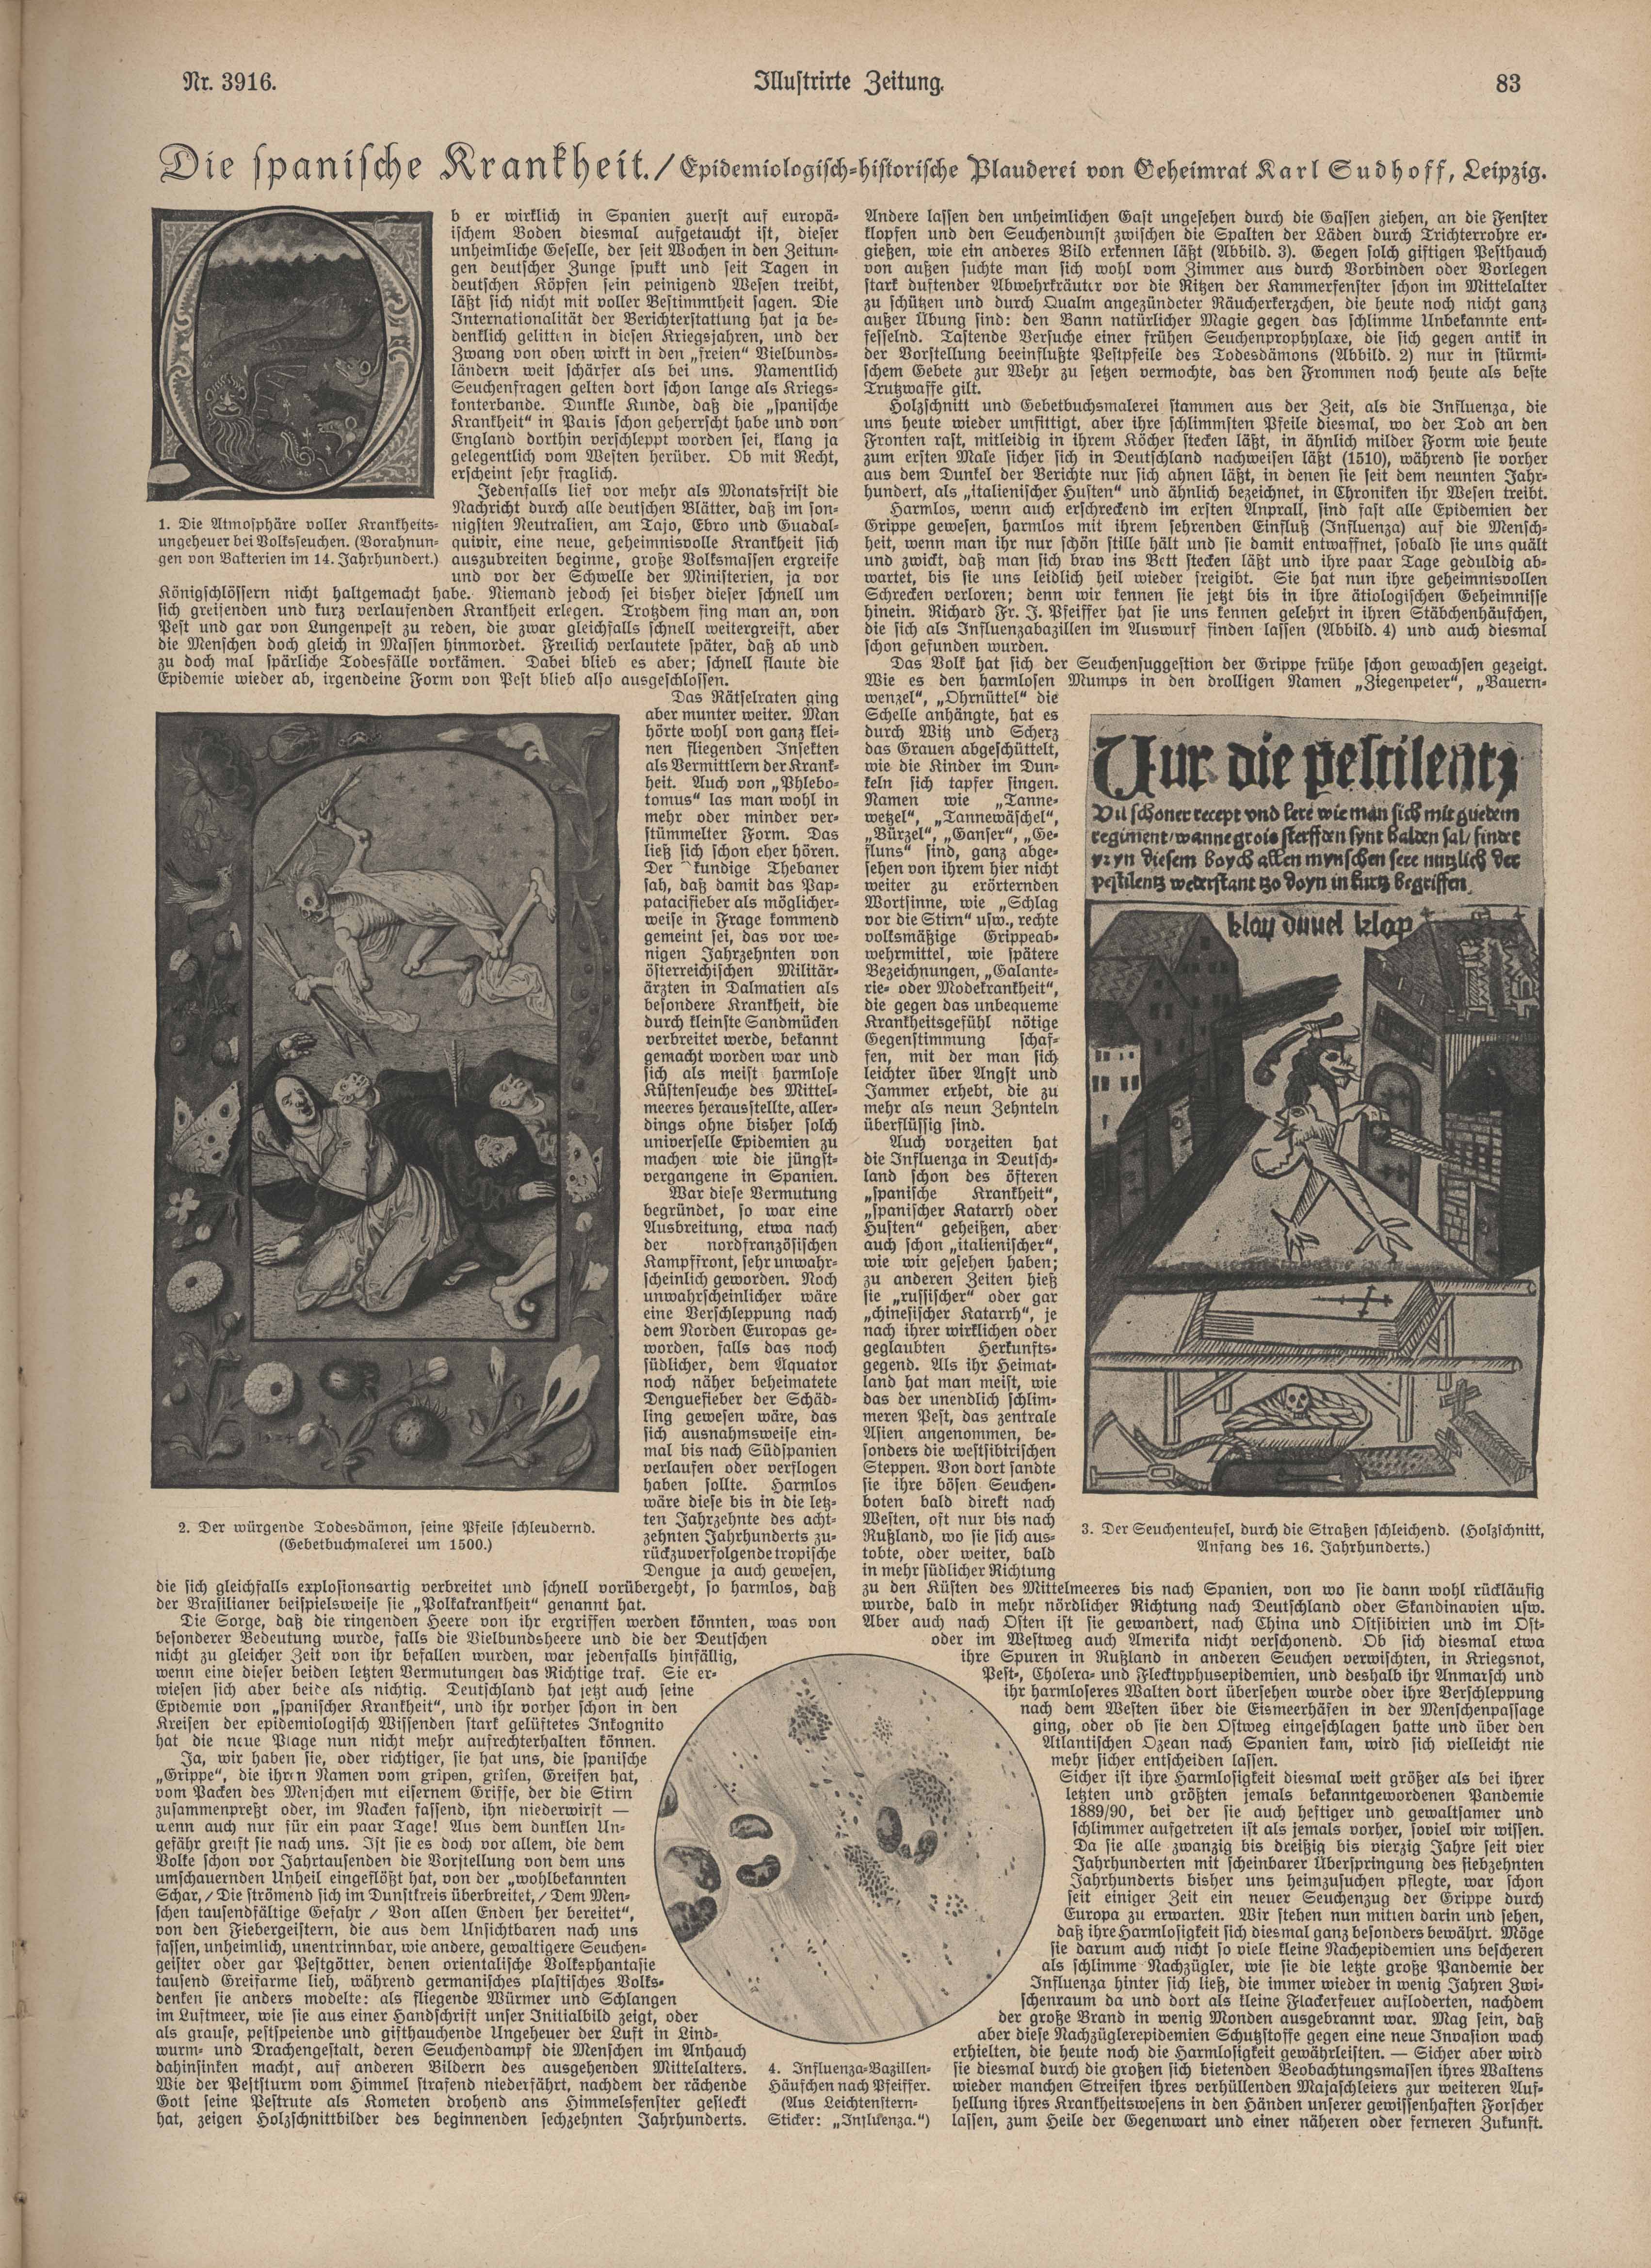 Druckgut: "Die spanische Krankheit", Artikel von Karl Sudhoff in der Illustrirten Zeitung, 18. Juli 1918